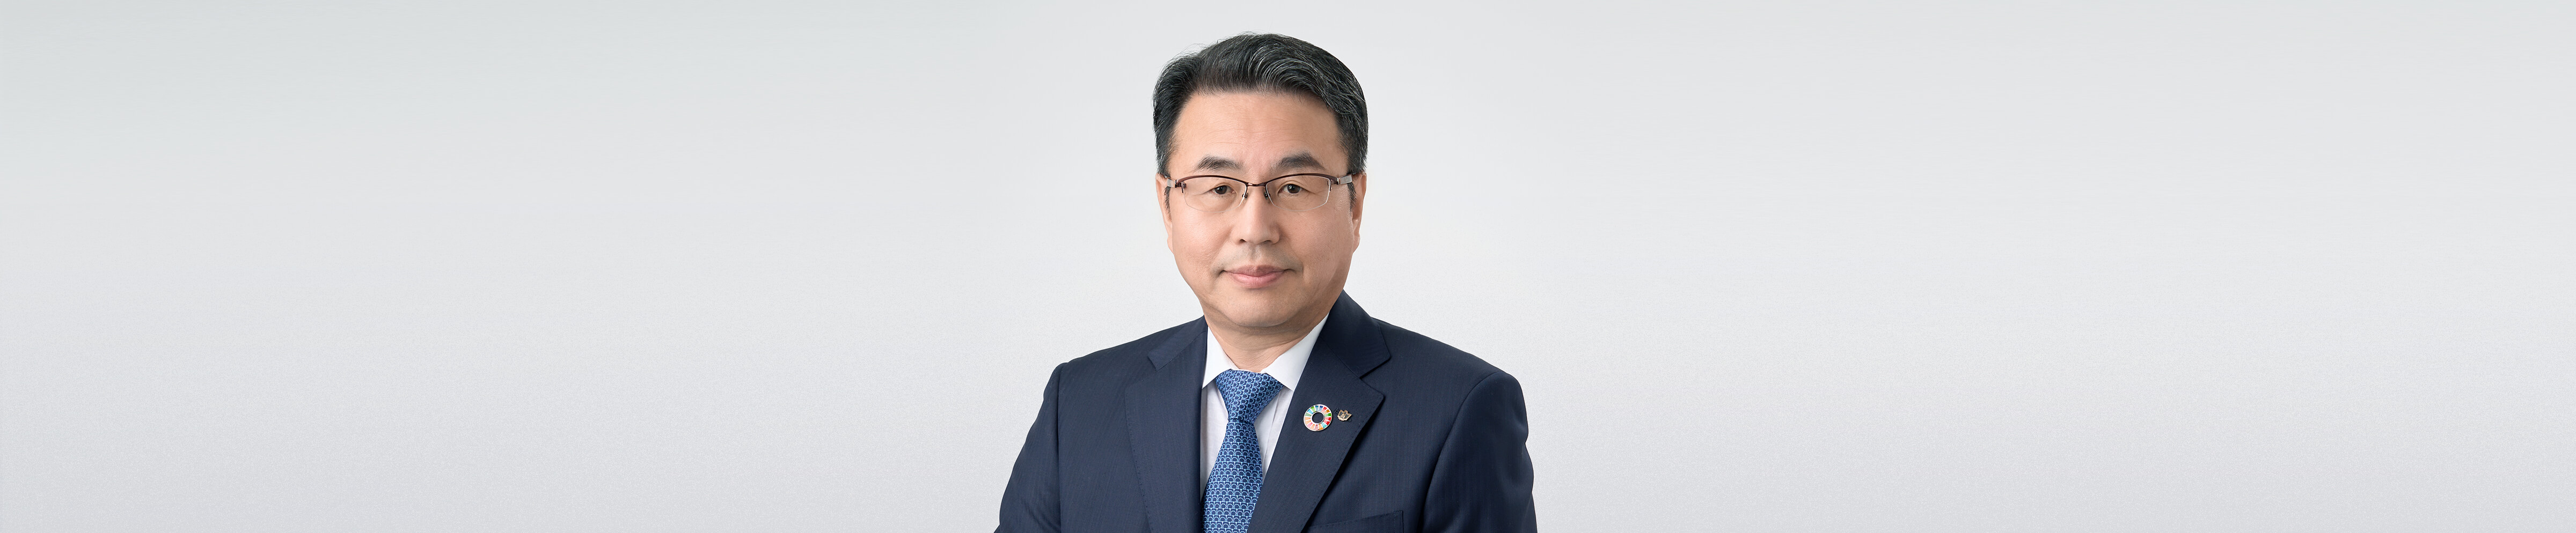 株式会社大和総研 代表取締役社長  望月 篤